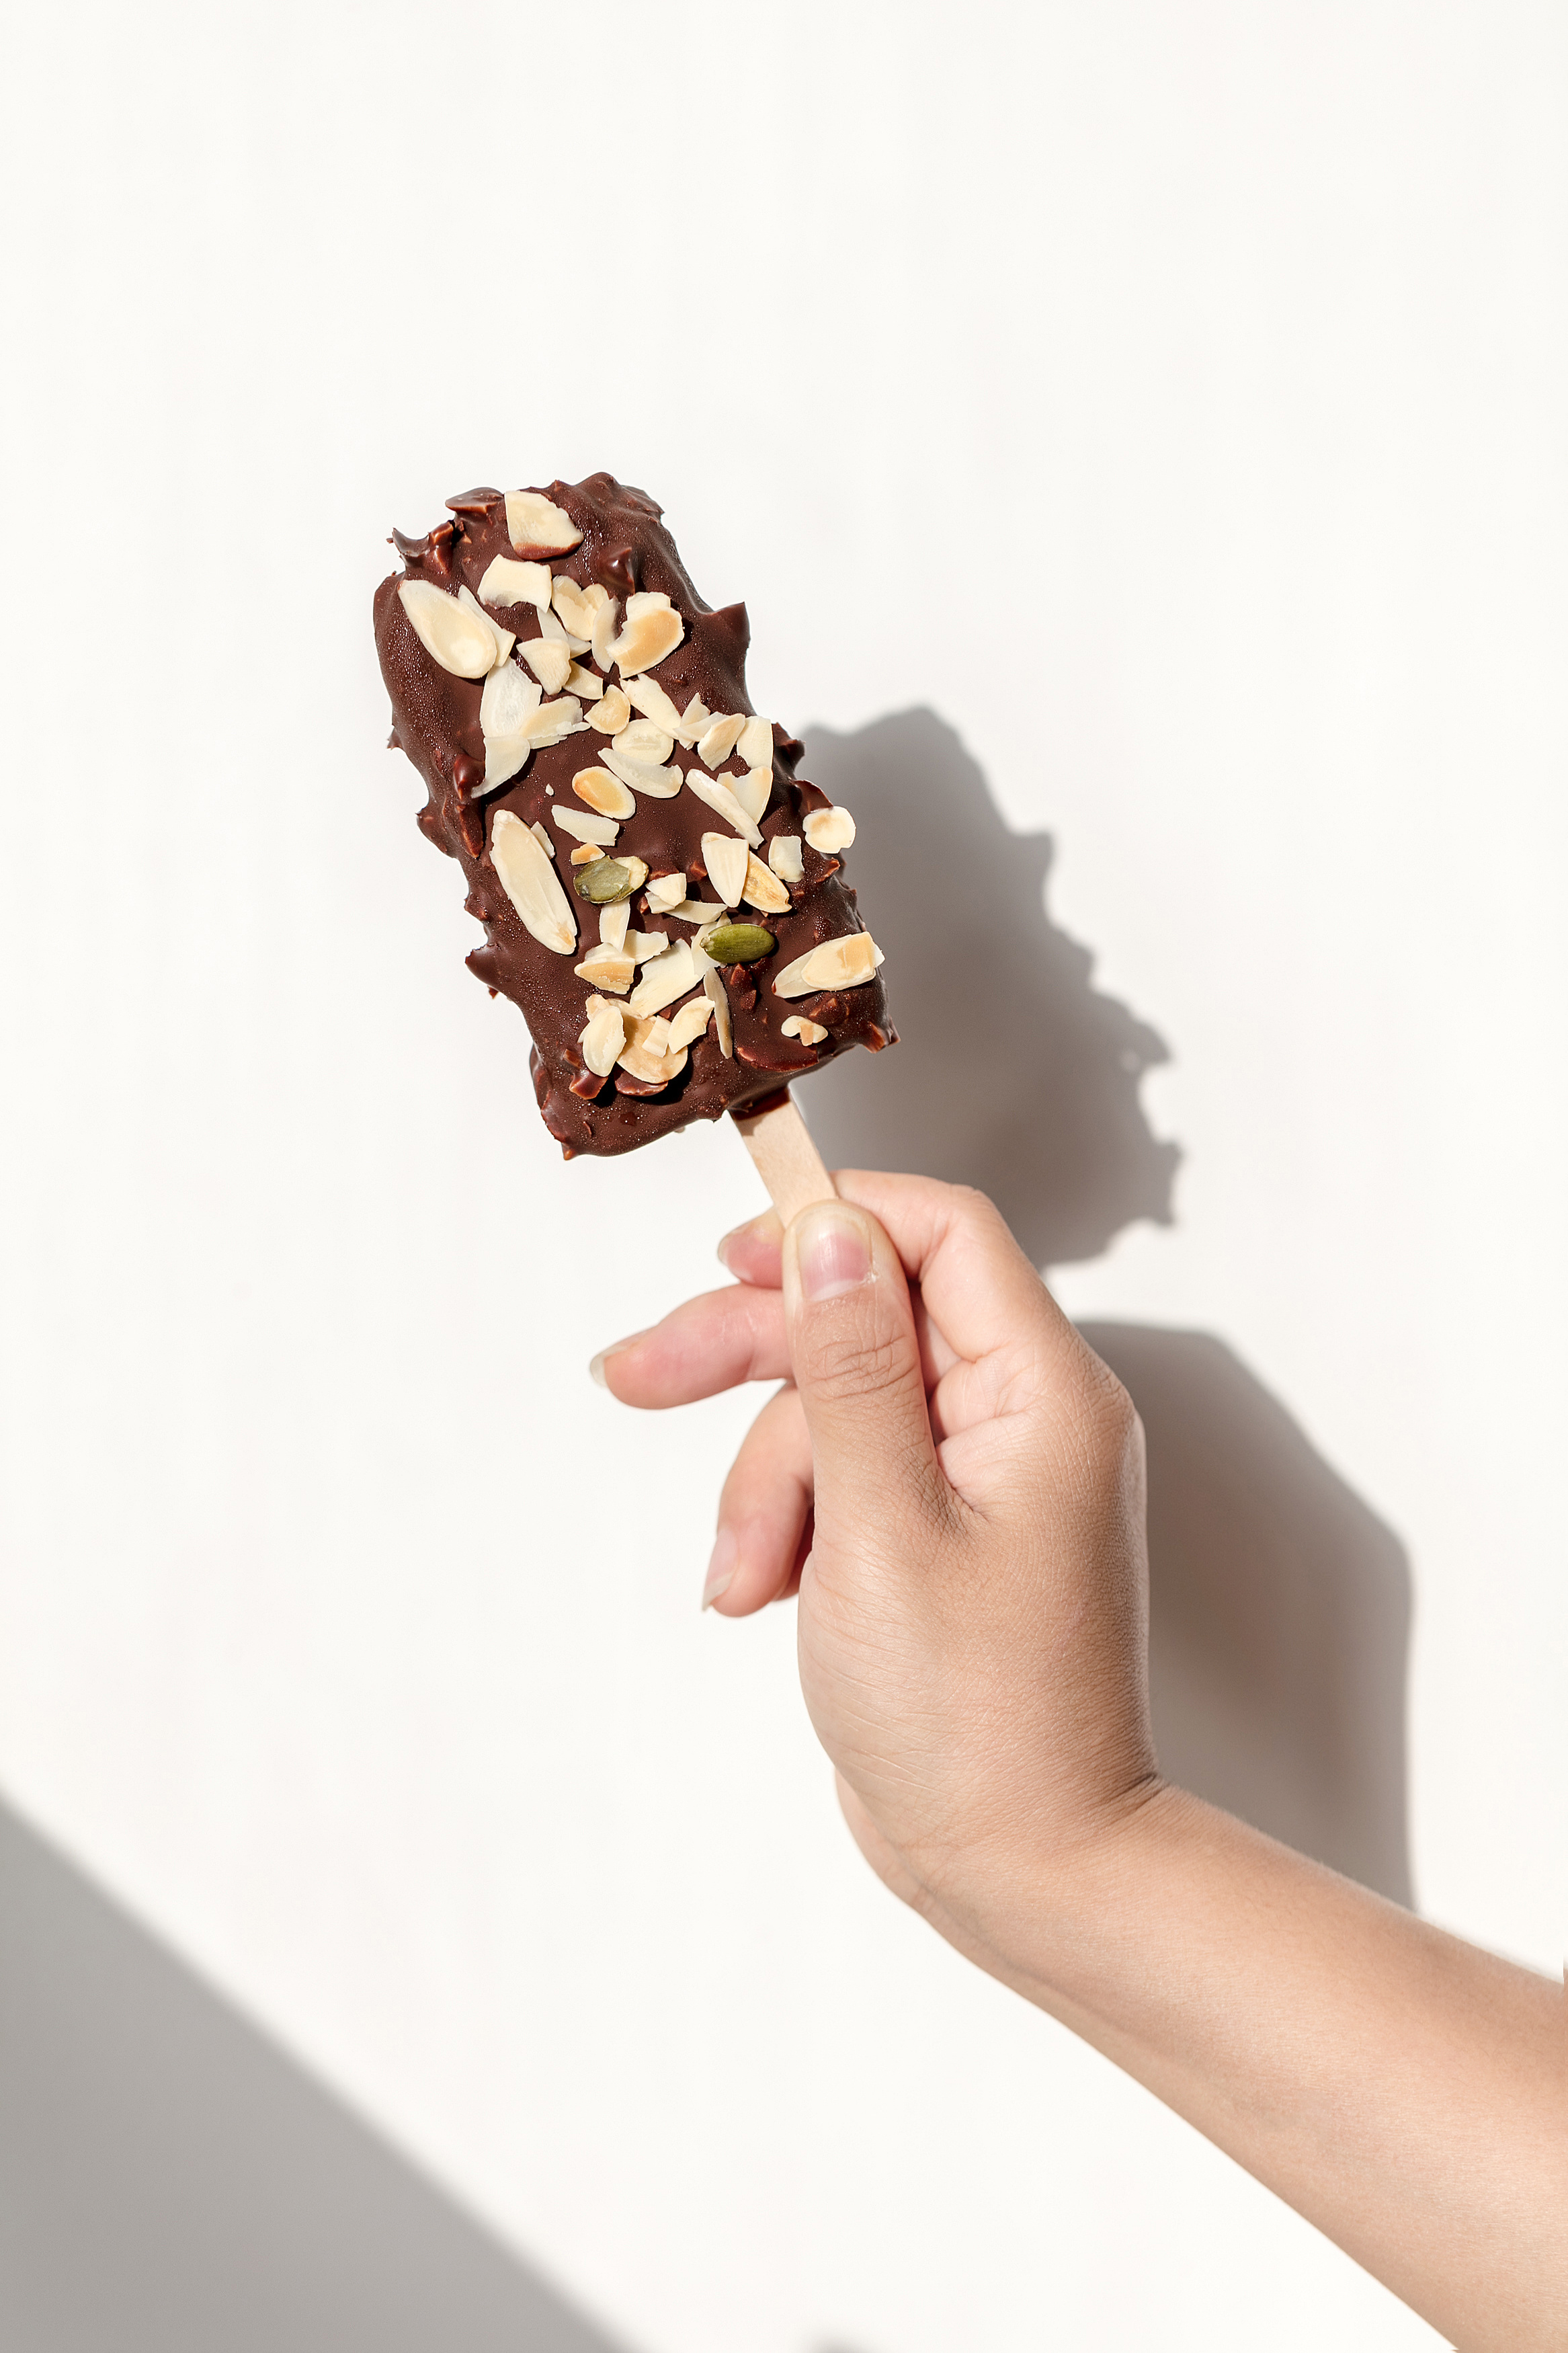 熊小白 脆皮巧克力系列冰淇淋 | Foodaily每日食品